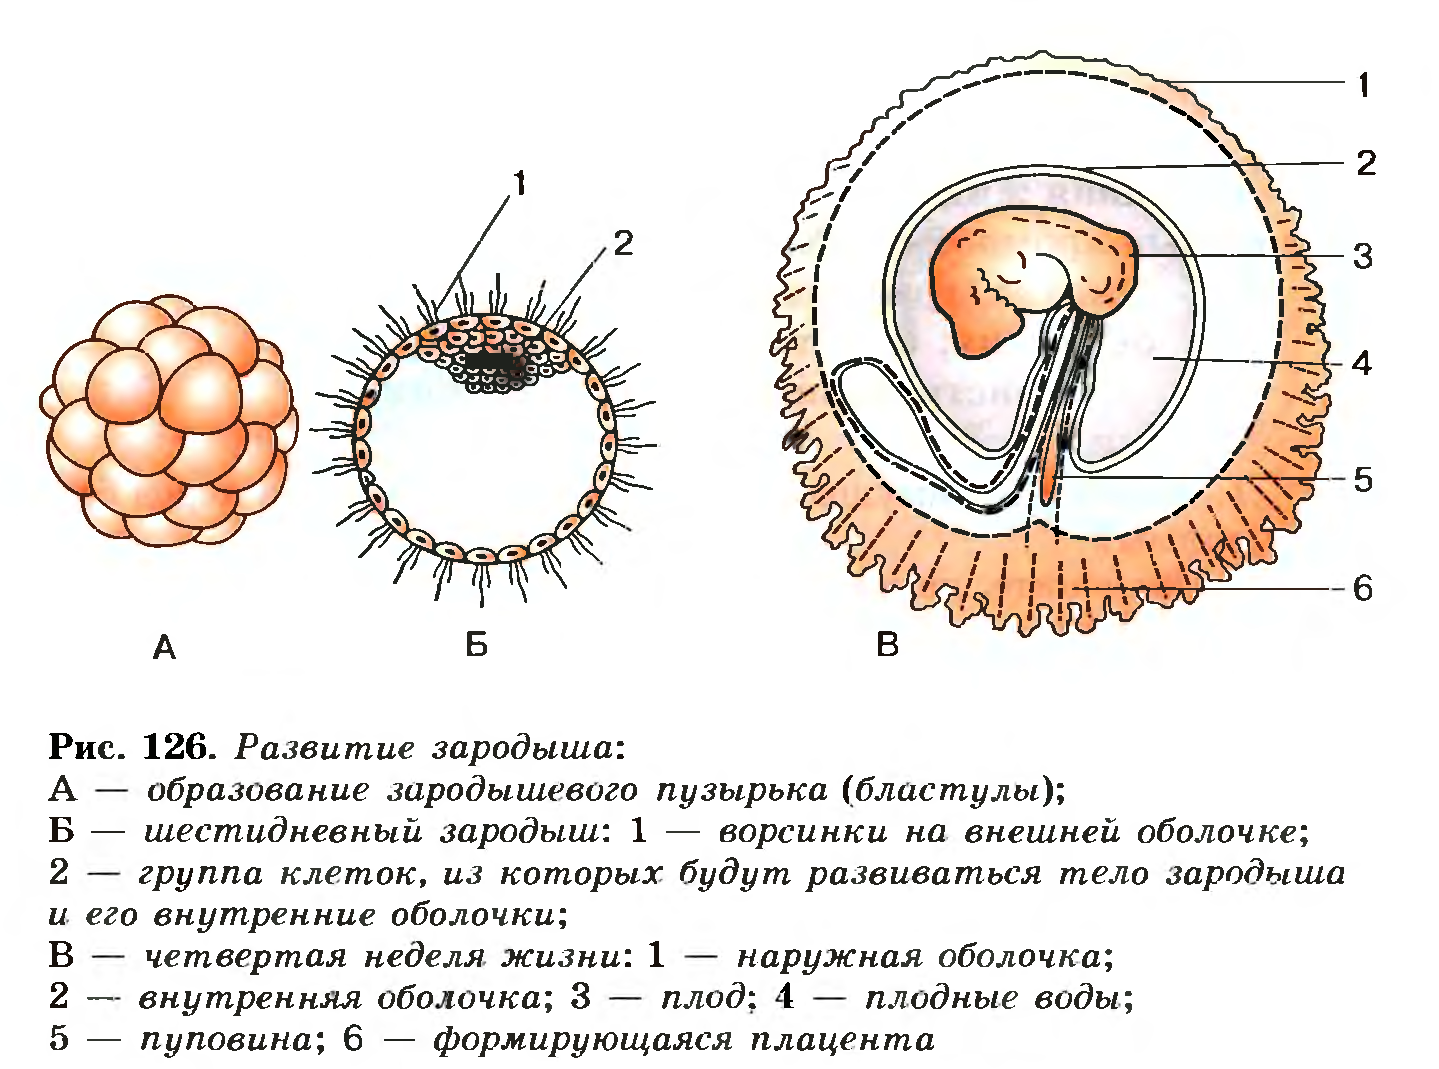 Плод человека получает кислород через. Стадии эмбрионального развития схема. Схема развития зародышевых оболочек. Строение зародыша эмбриона человек. Этапы развития зародыша и плода схема.